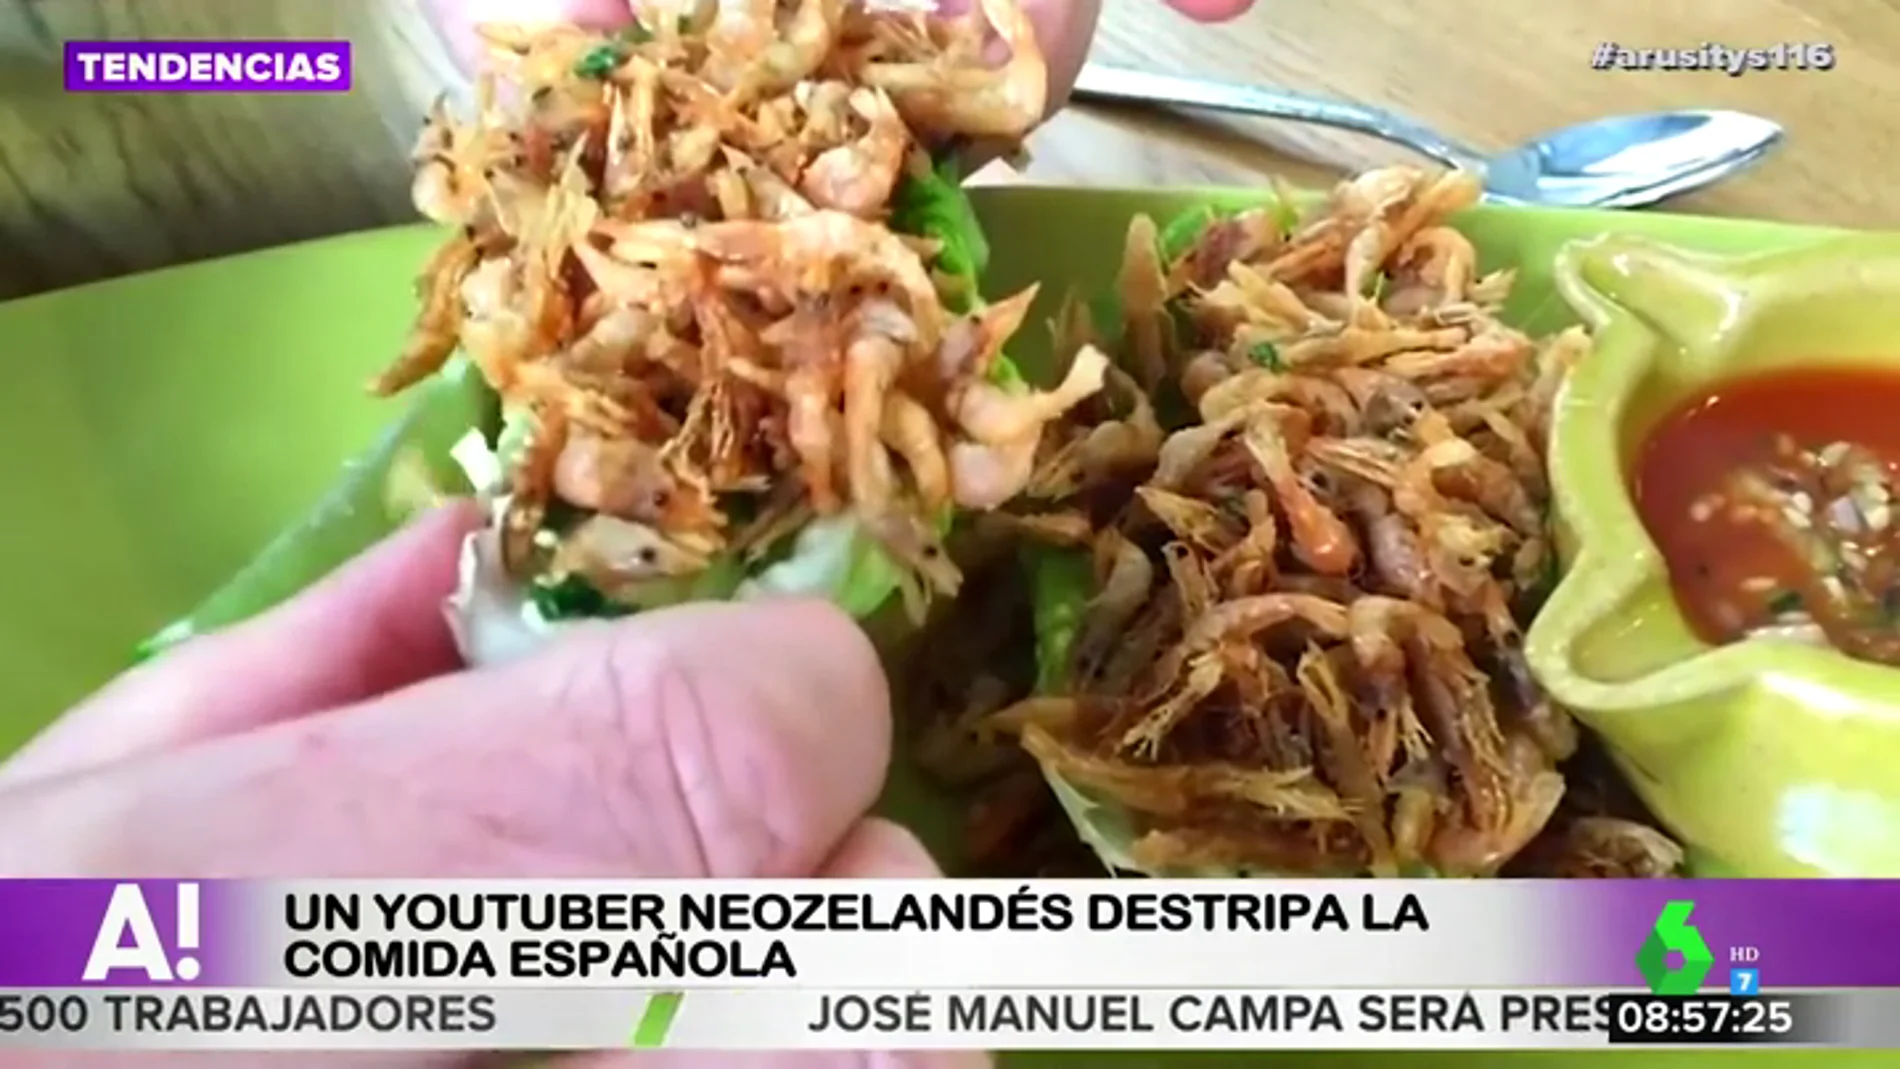 De la tortilla de patata a las croquetas: un youtuber neozelandés destripa la comida española desde Madrid